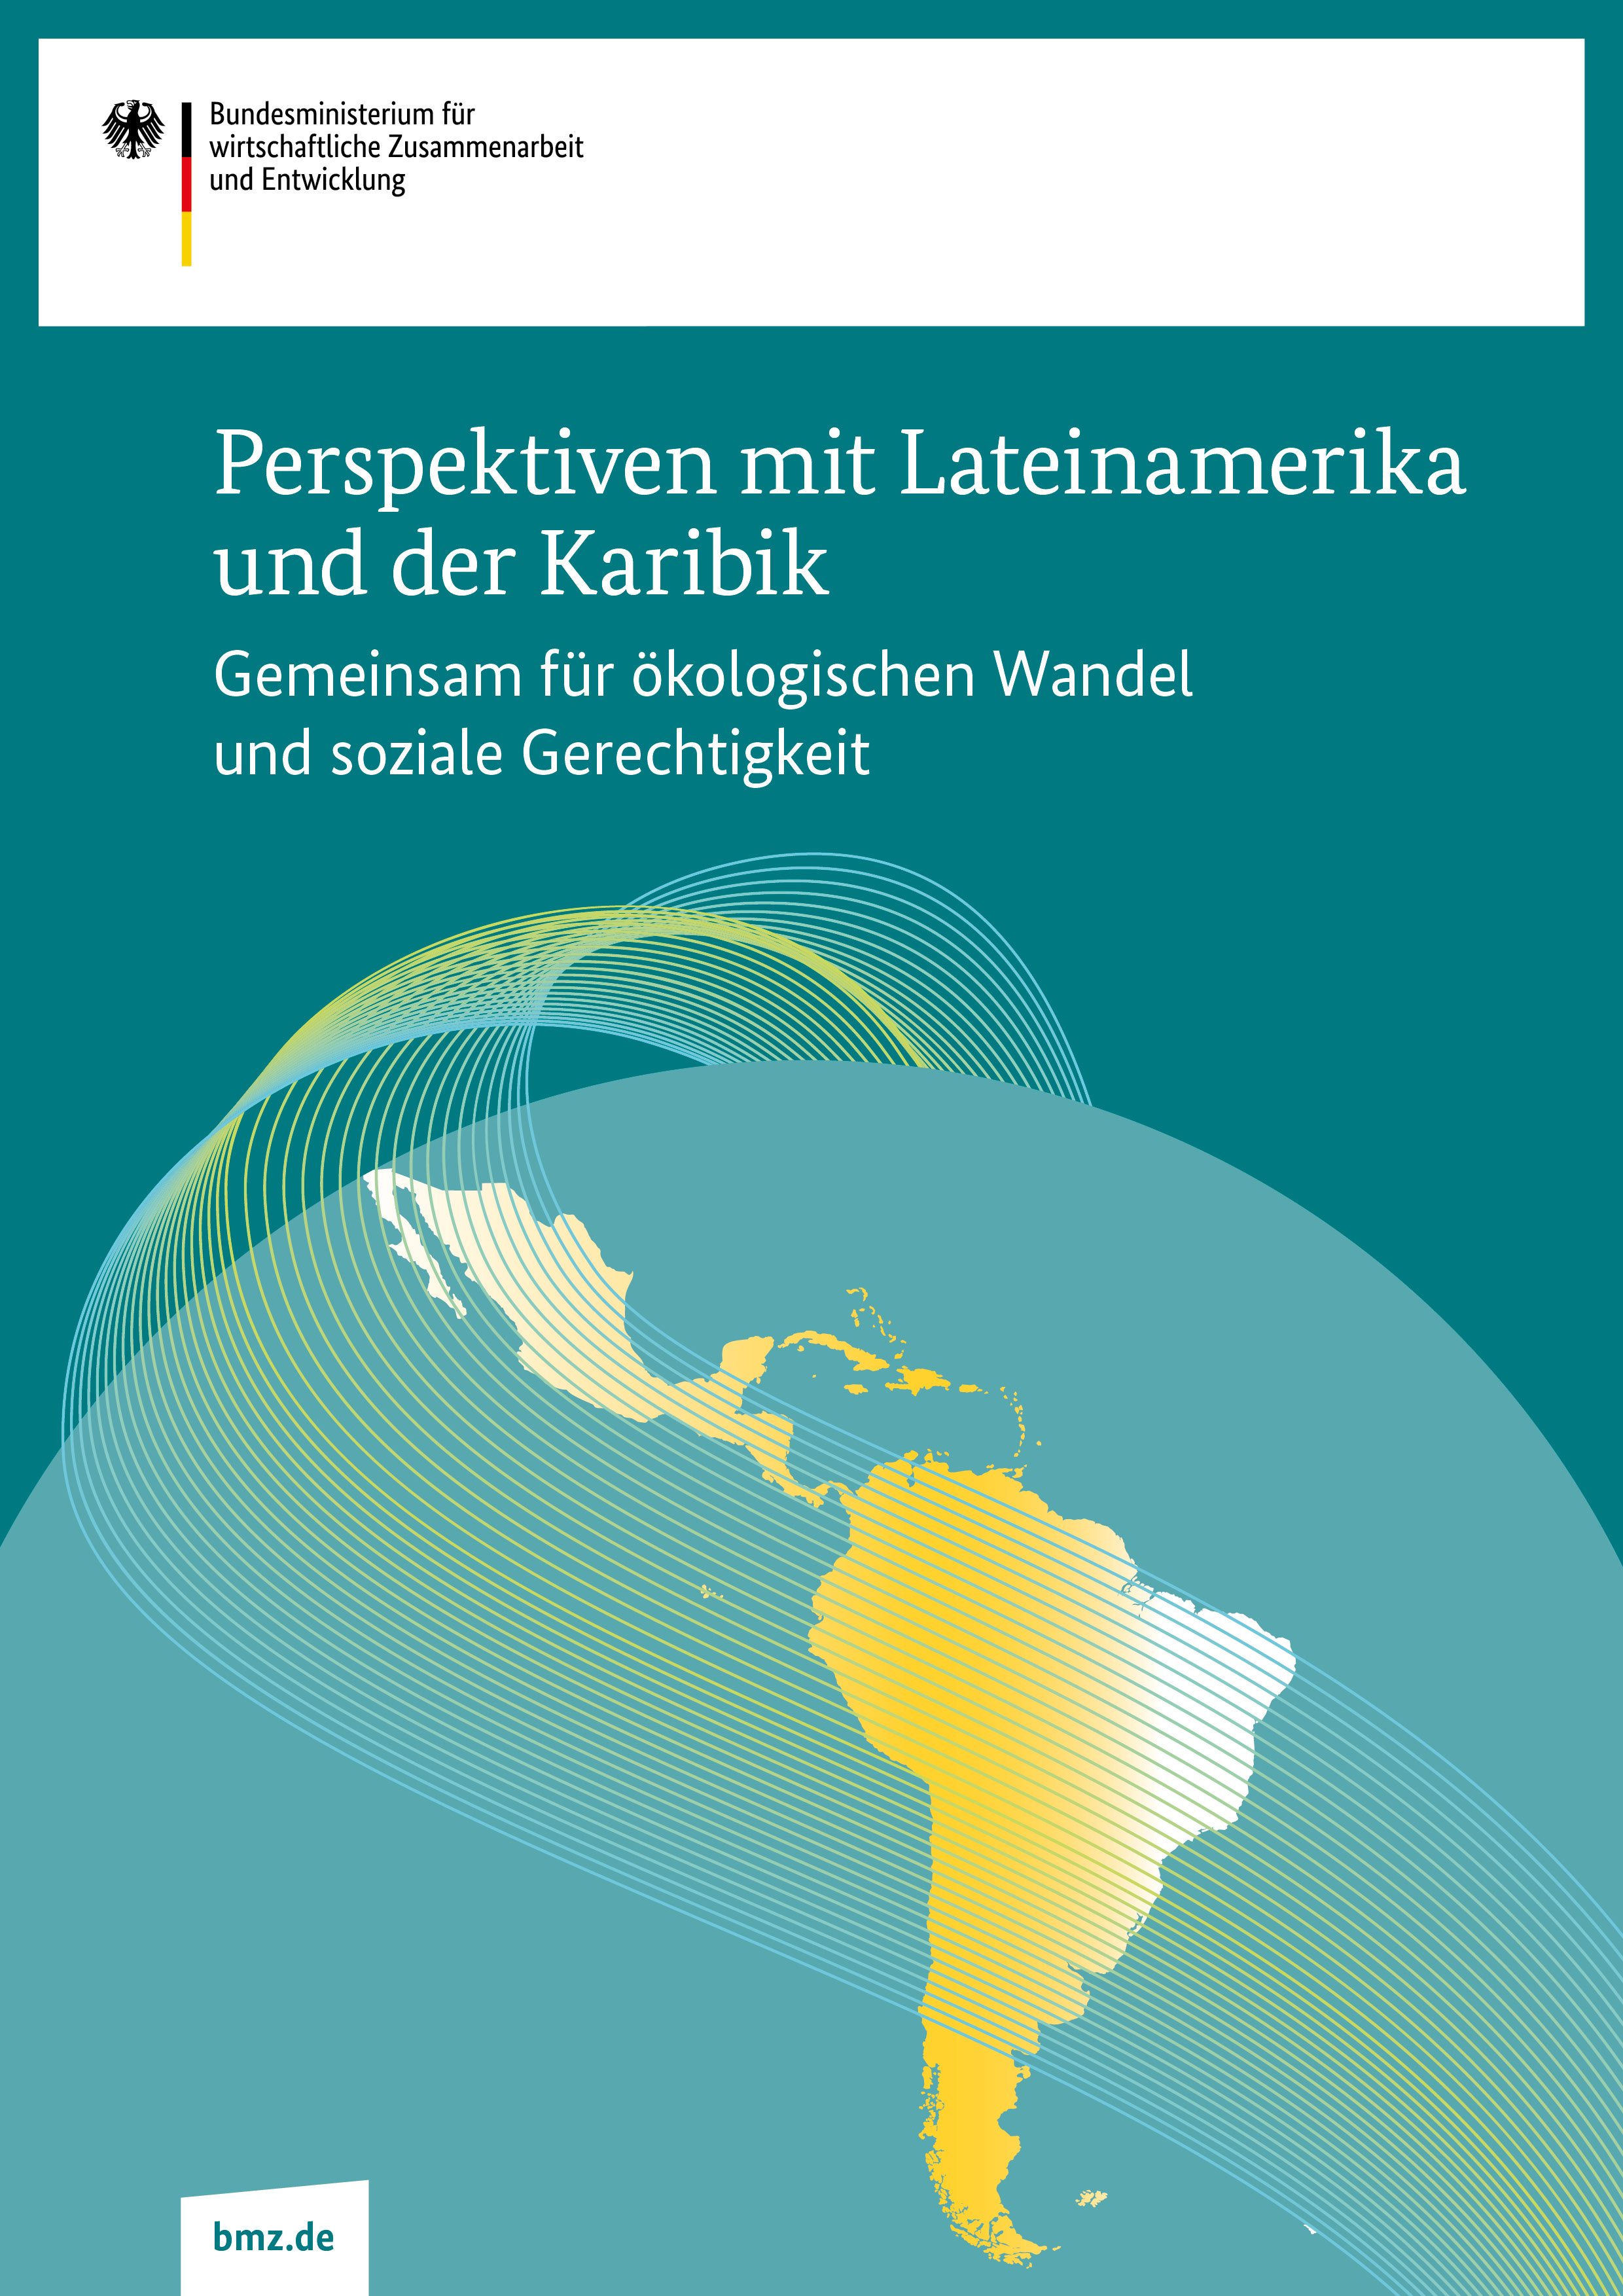 Cover BMZ-Positionspapier "Perspektiven mit Lateinamerika und der Karibik"